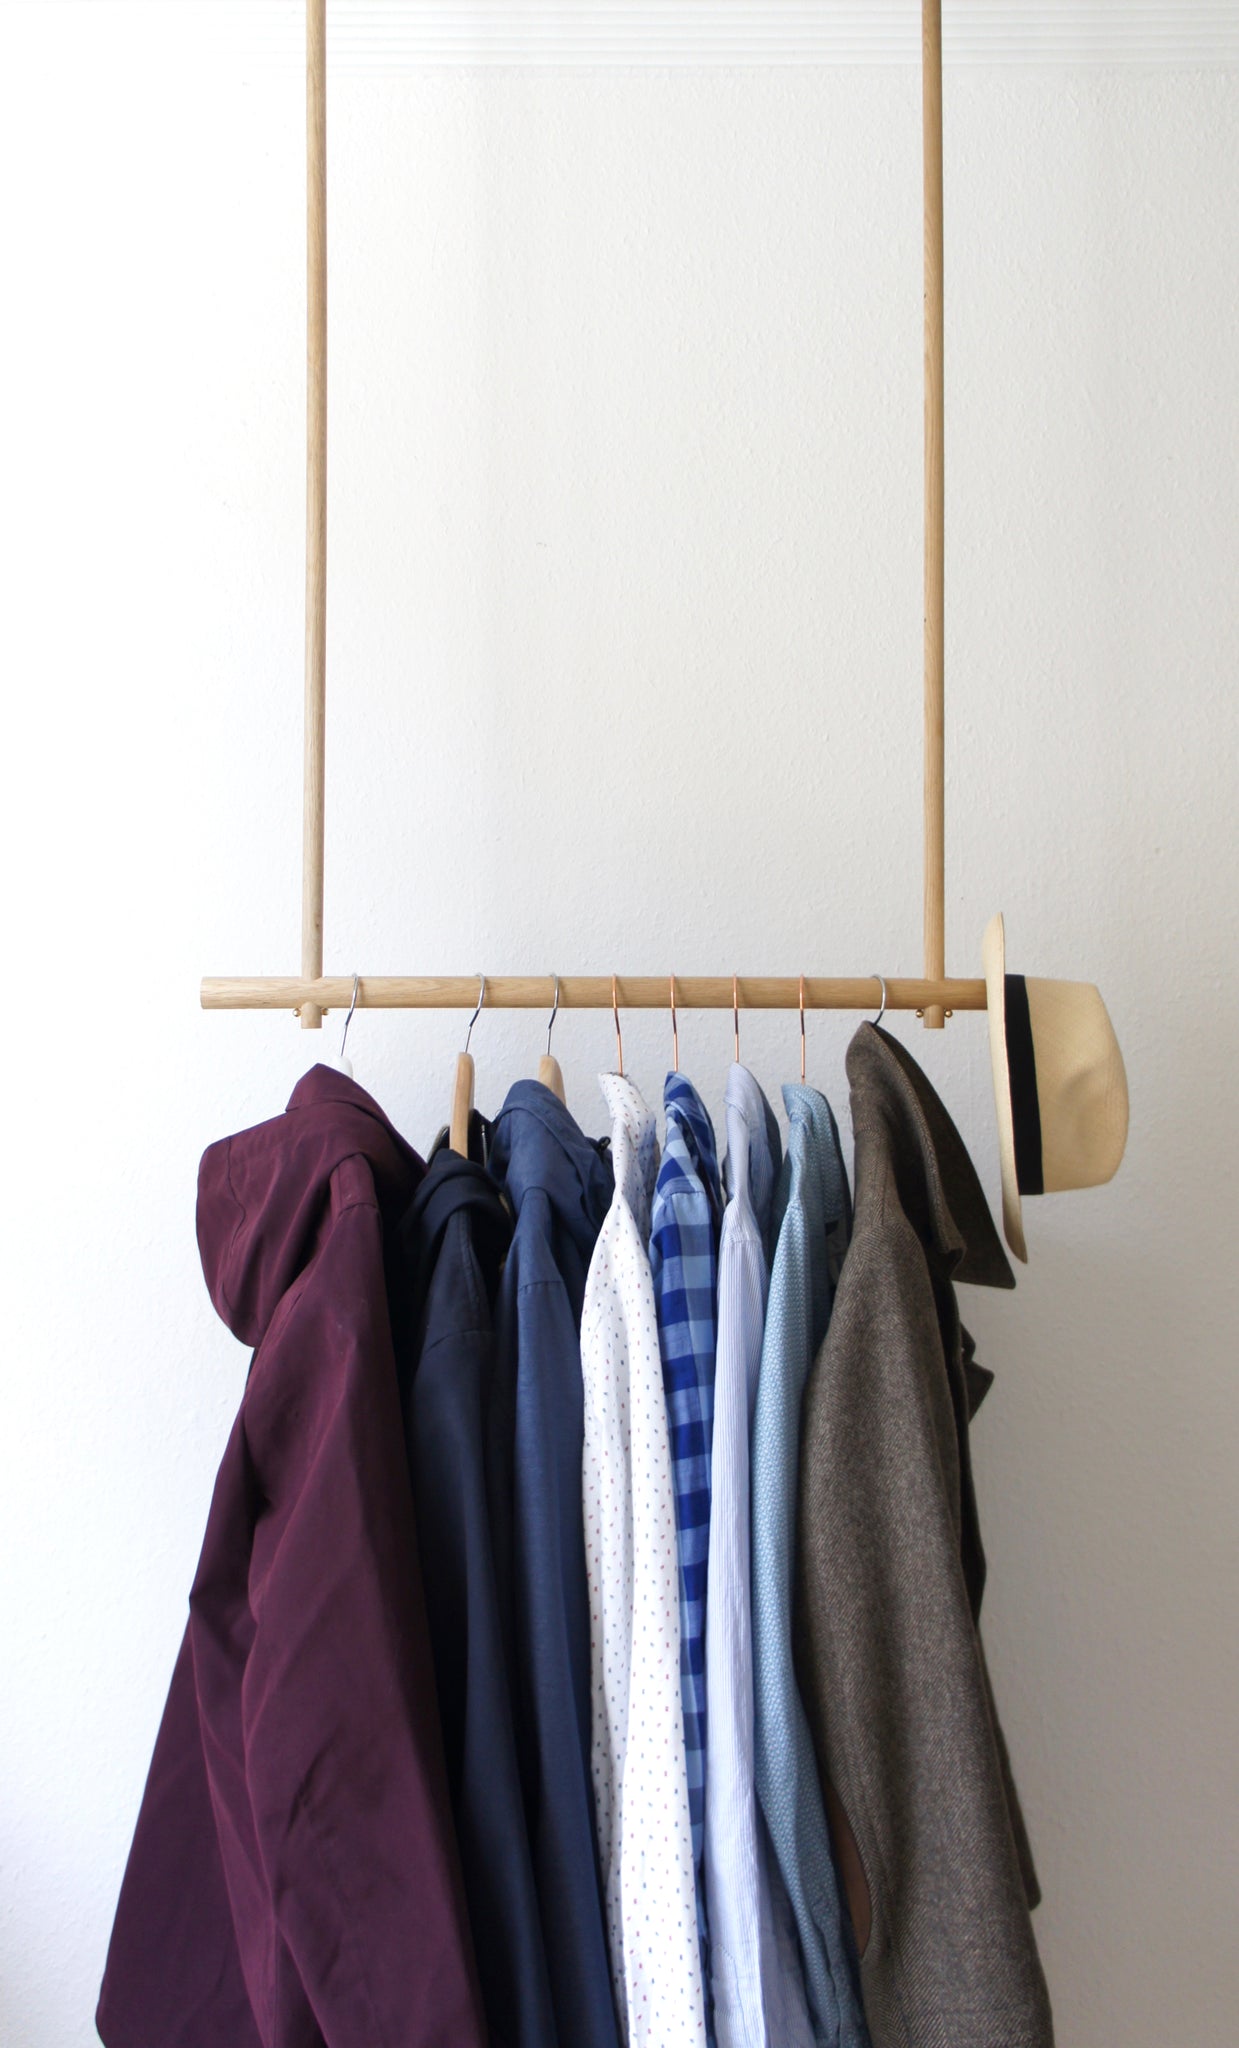 Oak Wood Clothes Hanger Wardrobe Hänger Garderobe Eiche Design Holz Garderobe Kleiderschrank minimalism minimalistic elegant Hängegarderobe